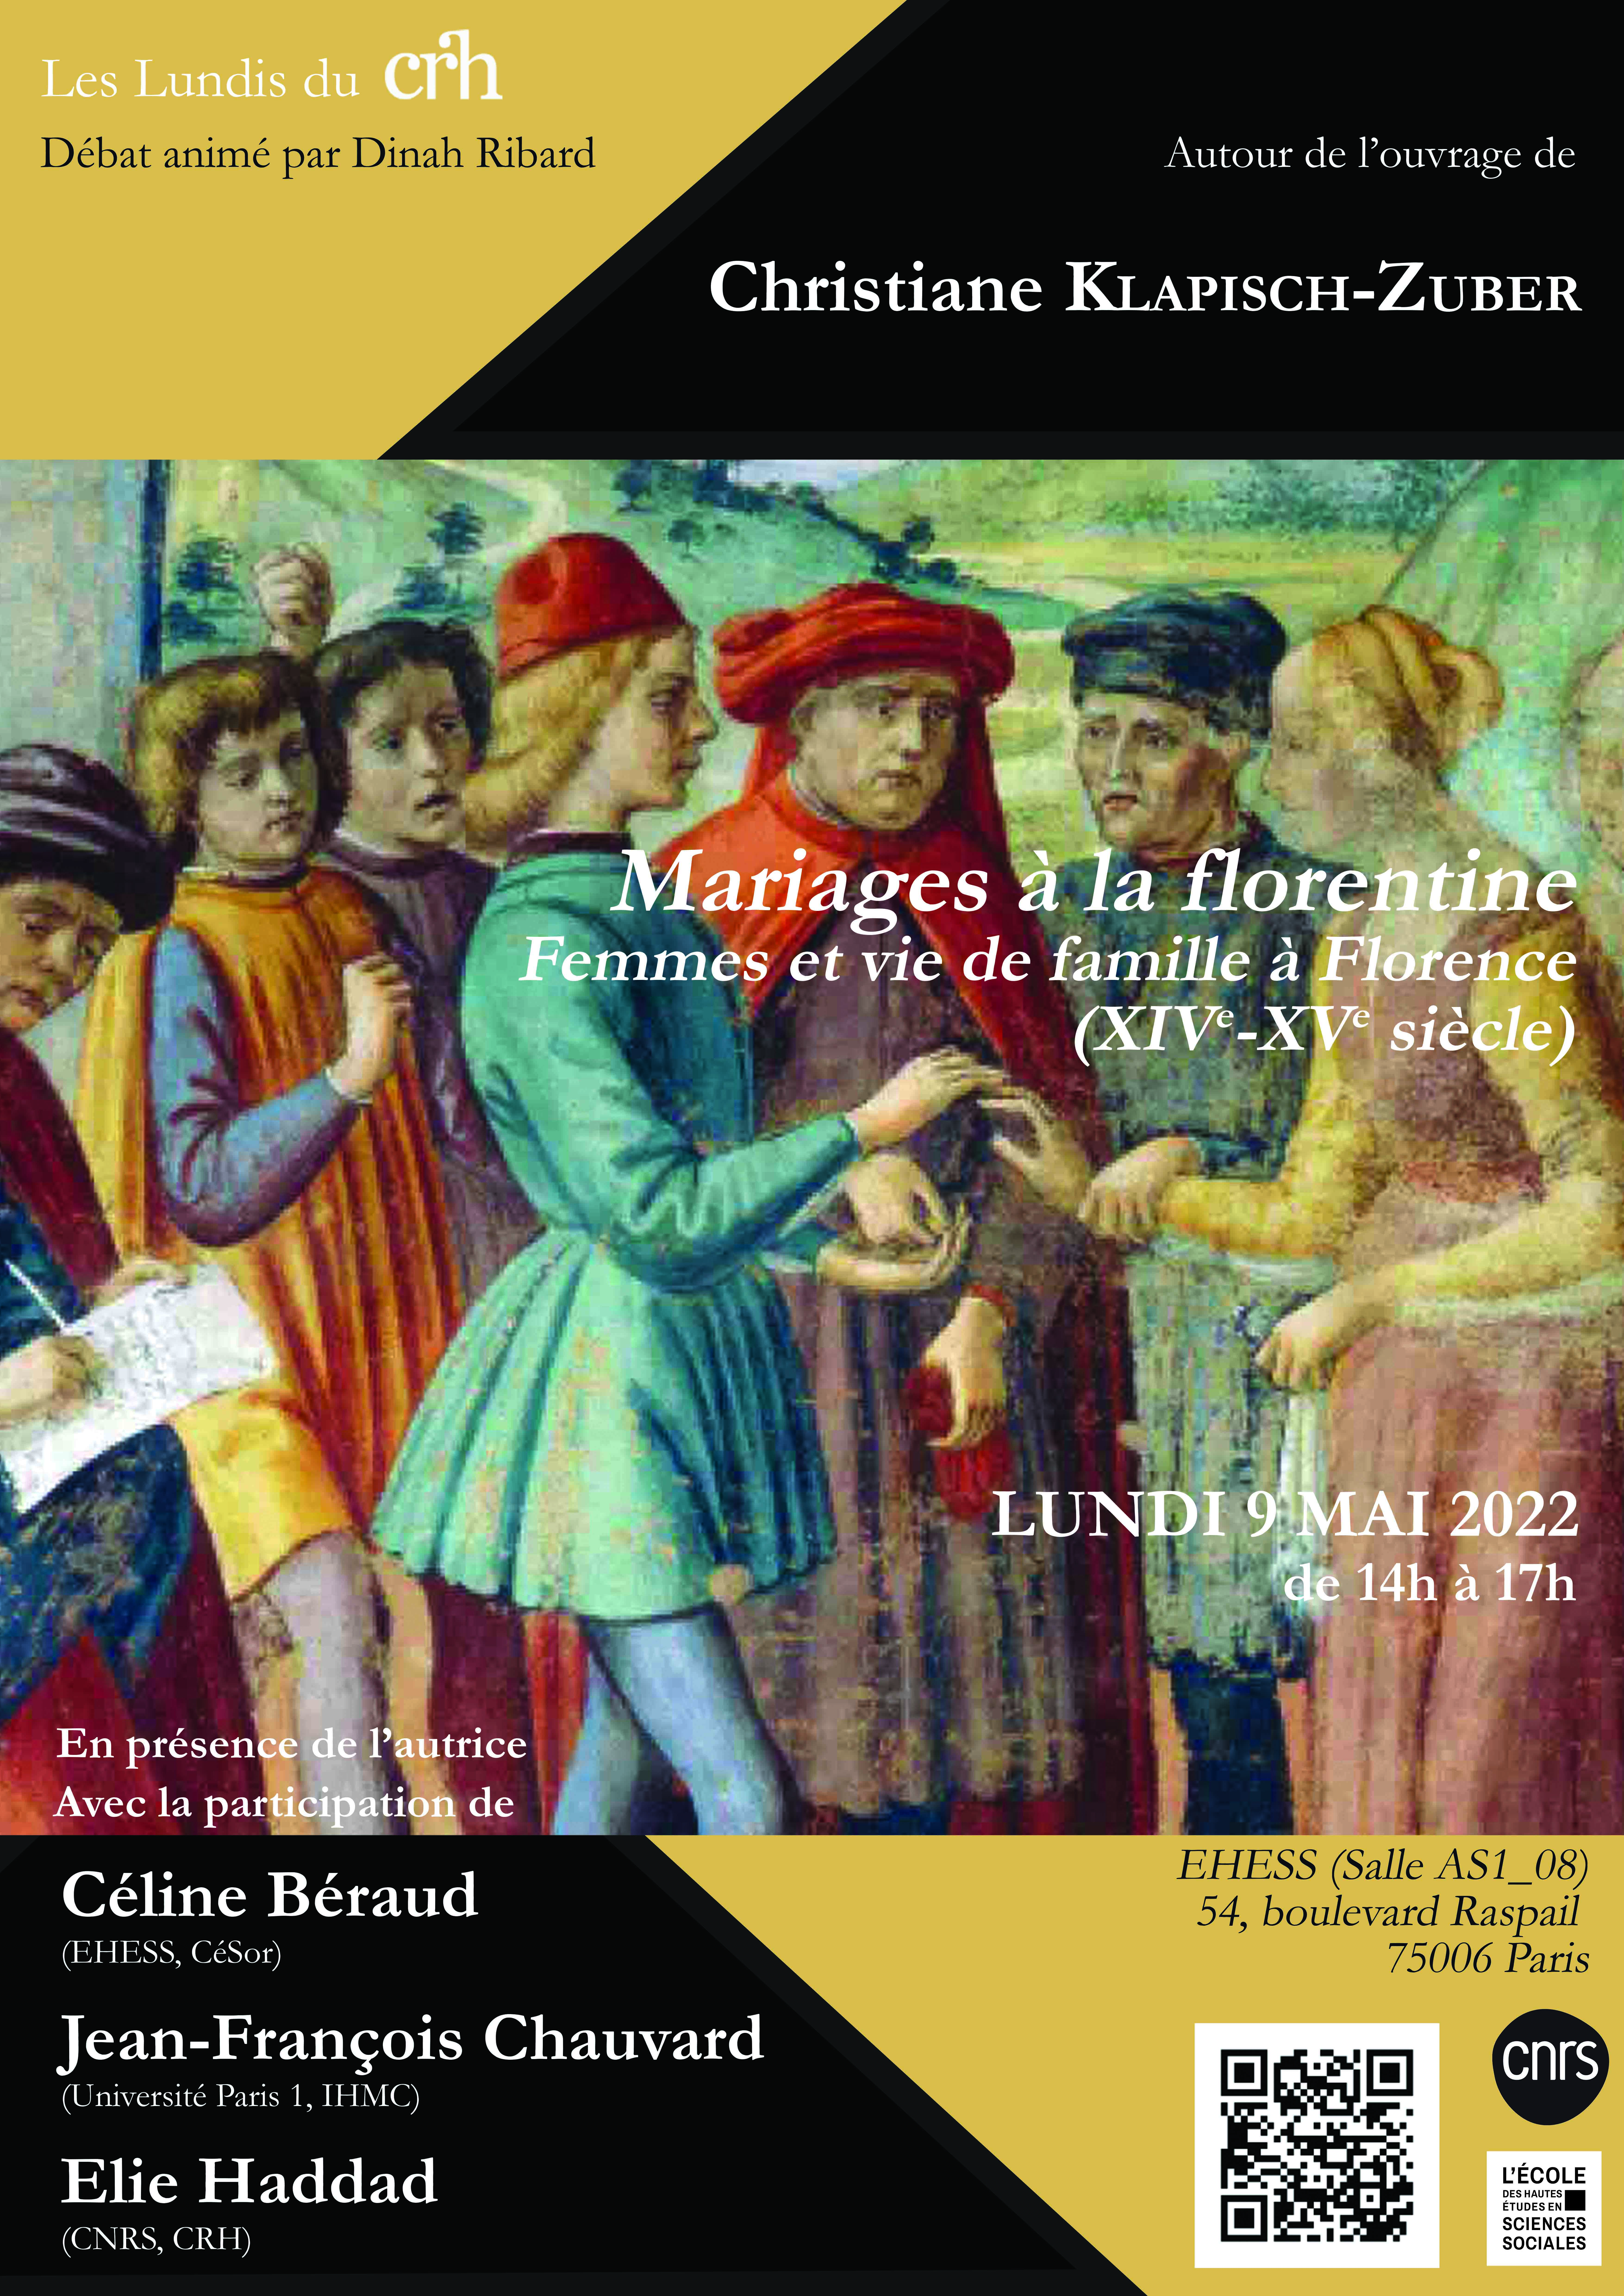 Autour de l'ouvrage de Christiane Klapisch-Zuber, Mariages à la florentine. Femmes et vie de famille à Florence (XIVe-XVe siècle)